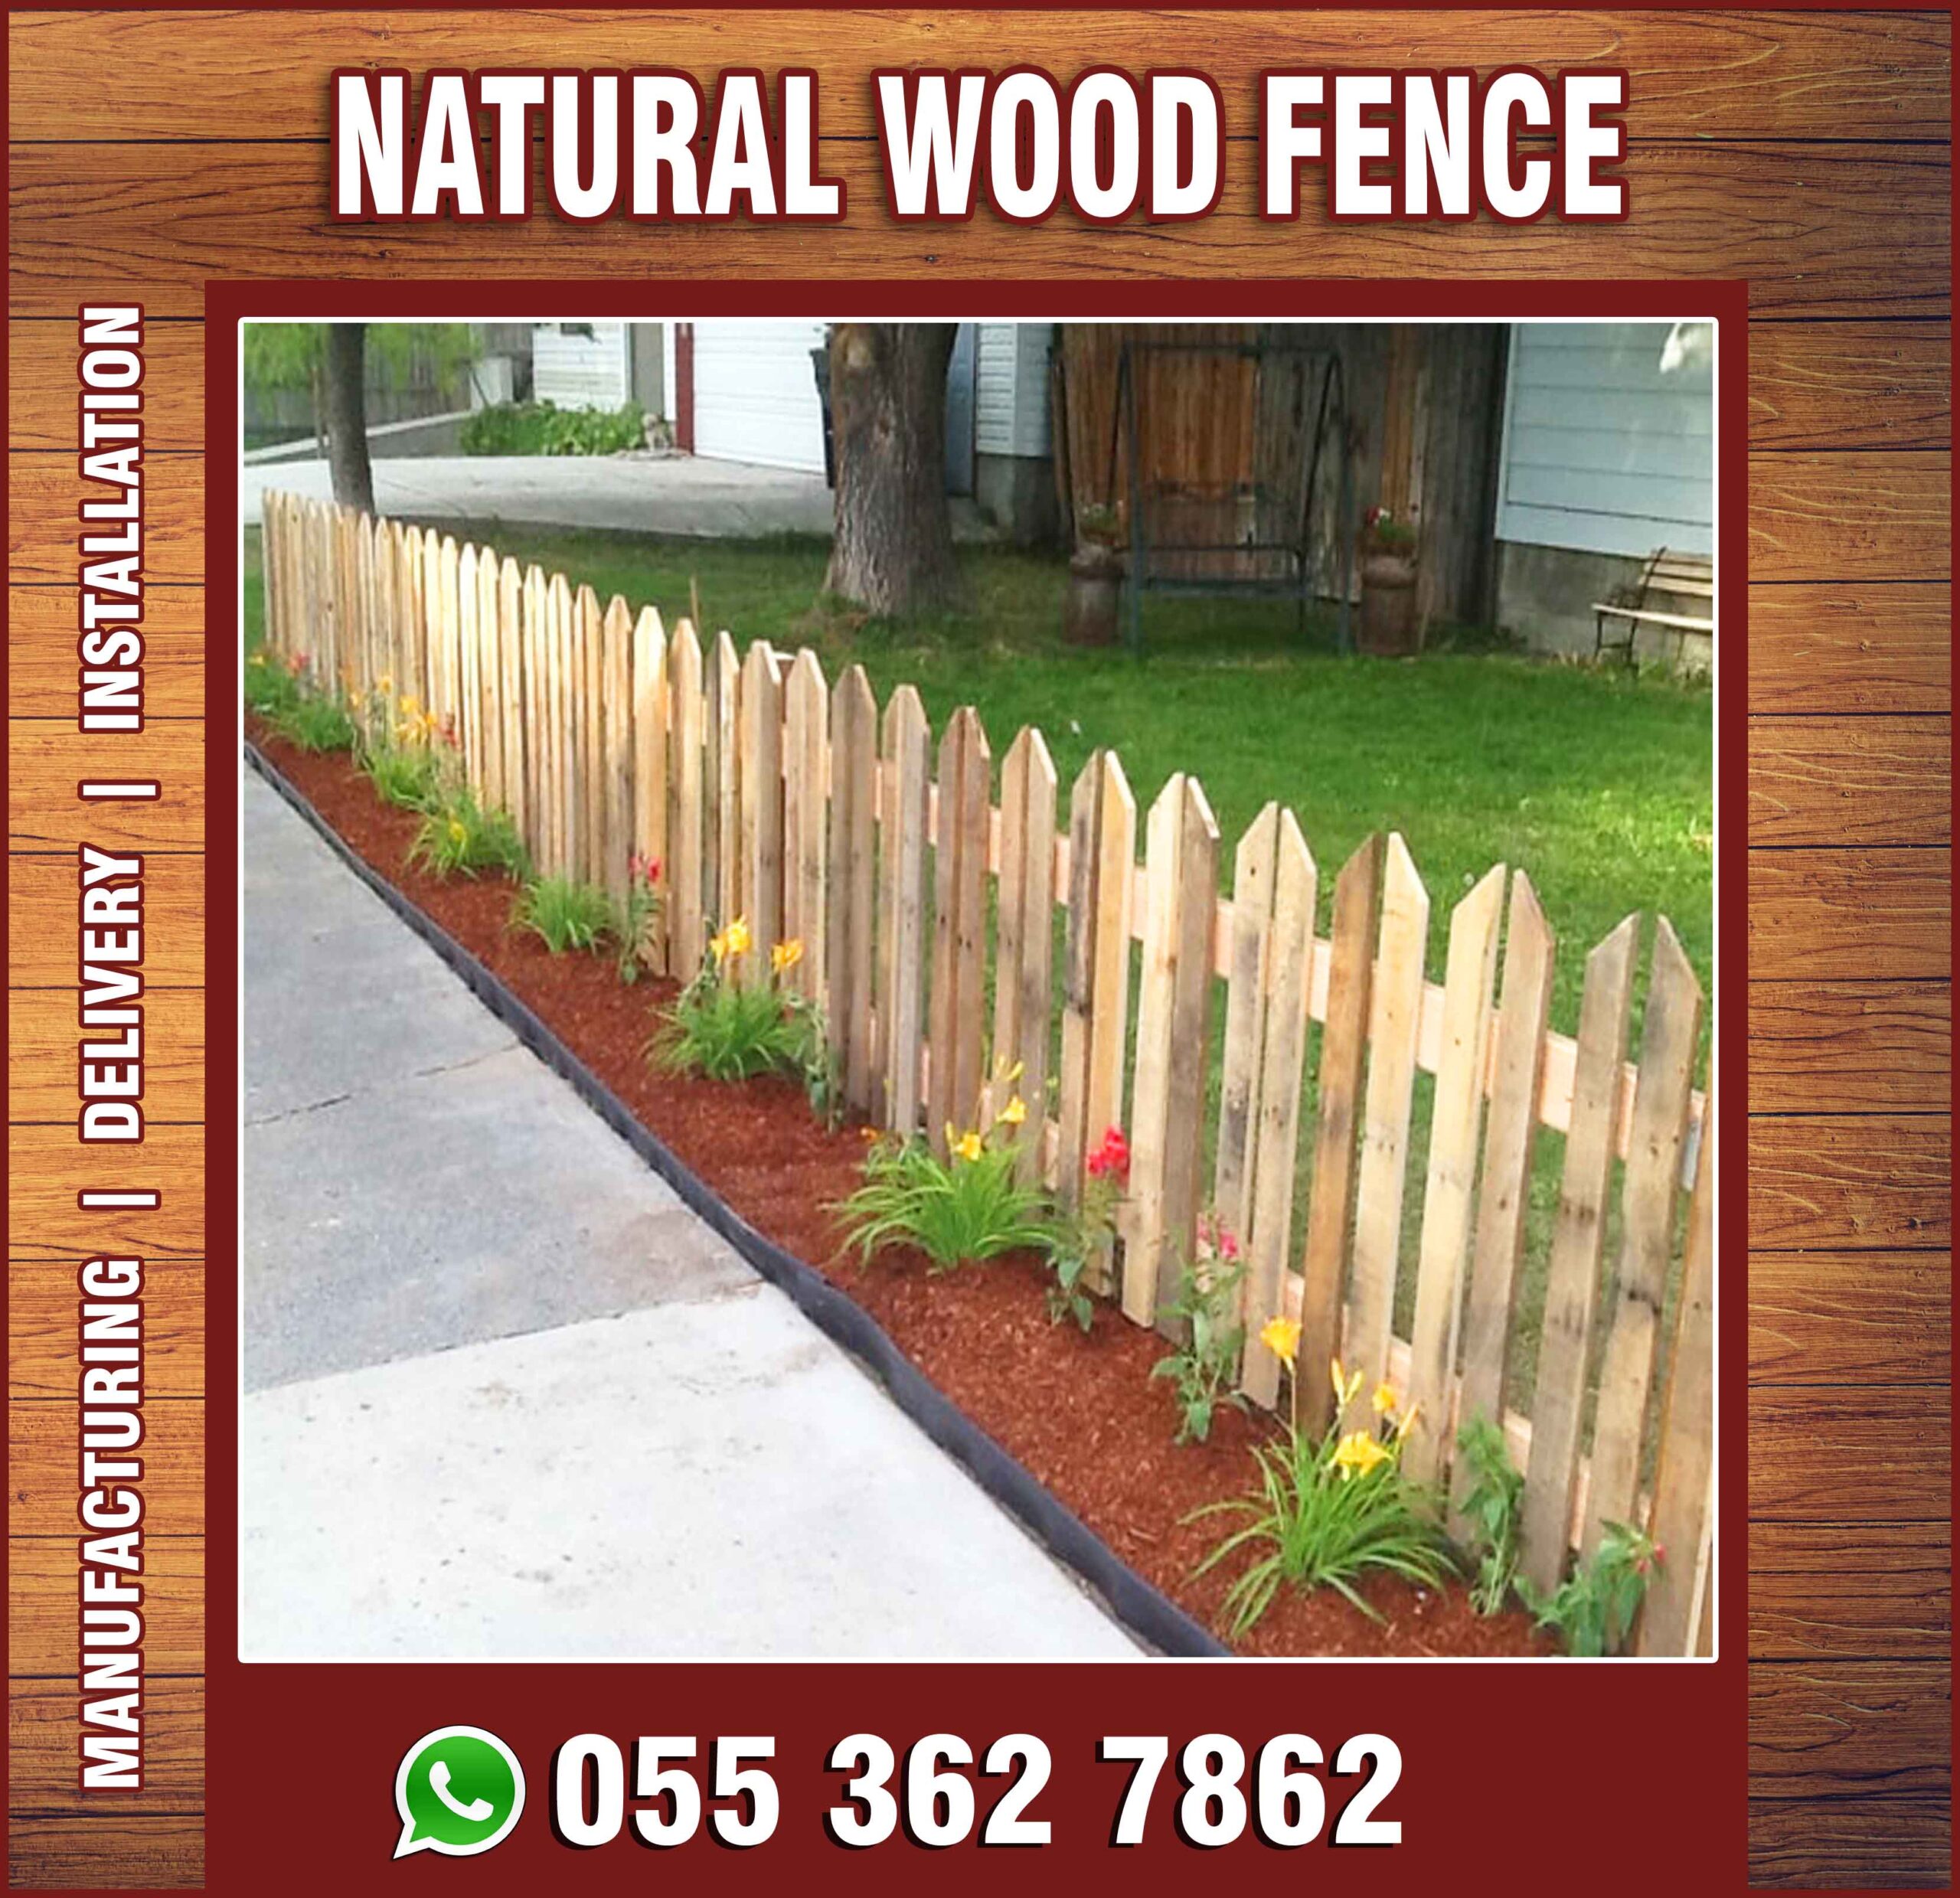 Natural Wood Fences in UAE-2.jpg